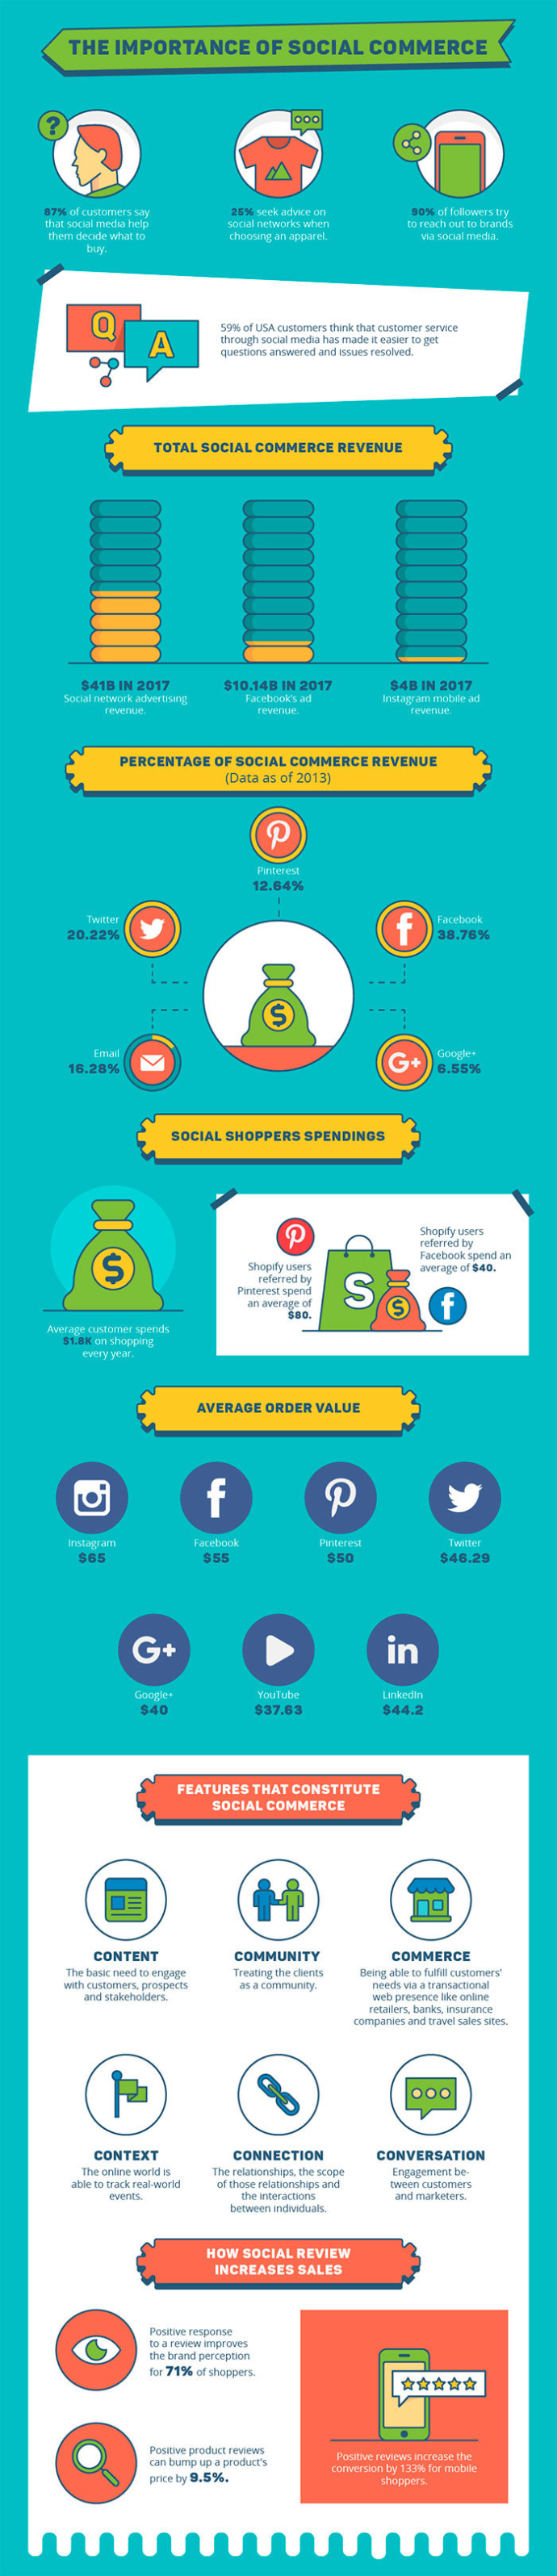  E-commerce в соцсетях: факты, цифры и особенности поведения пользователей (инфографика)